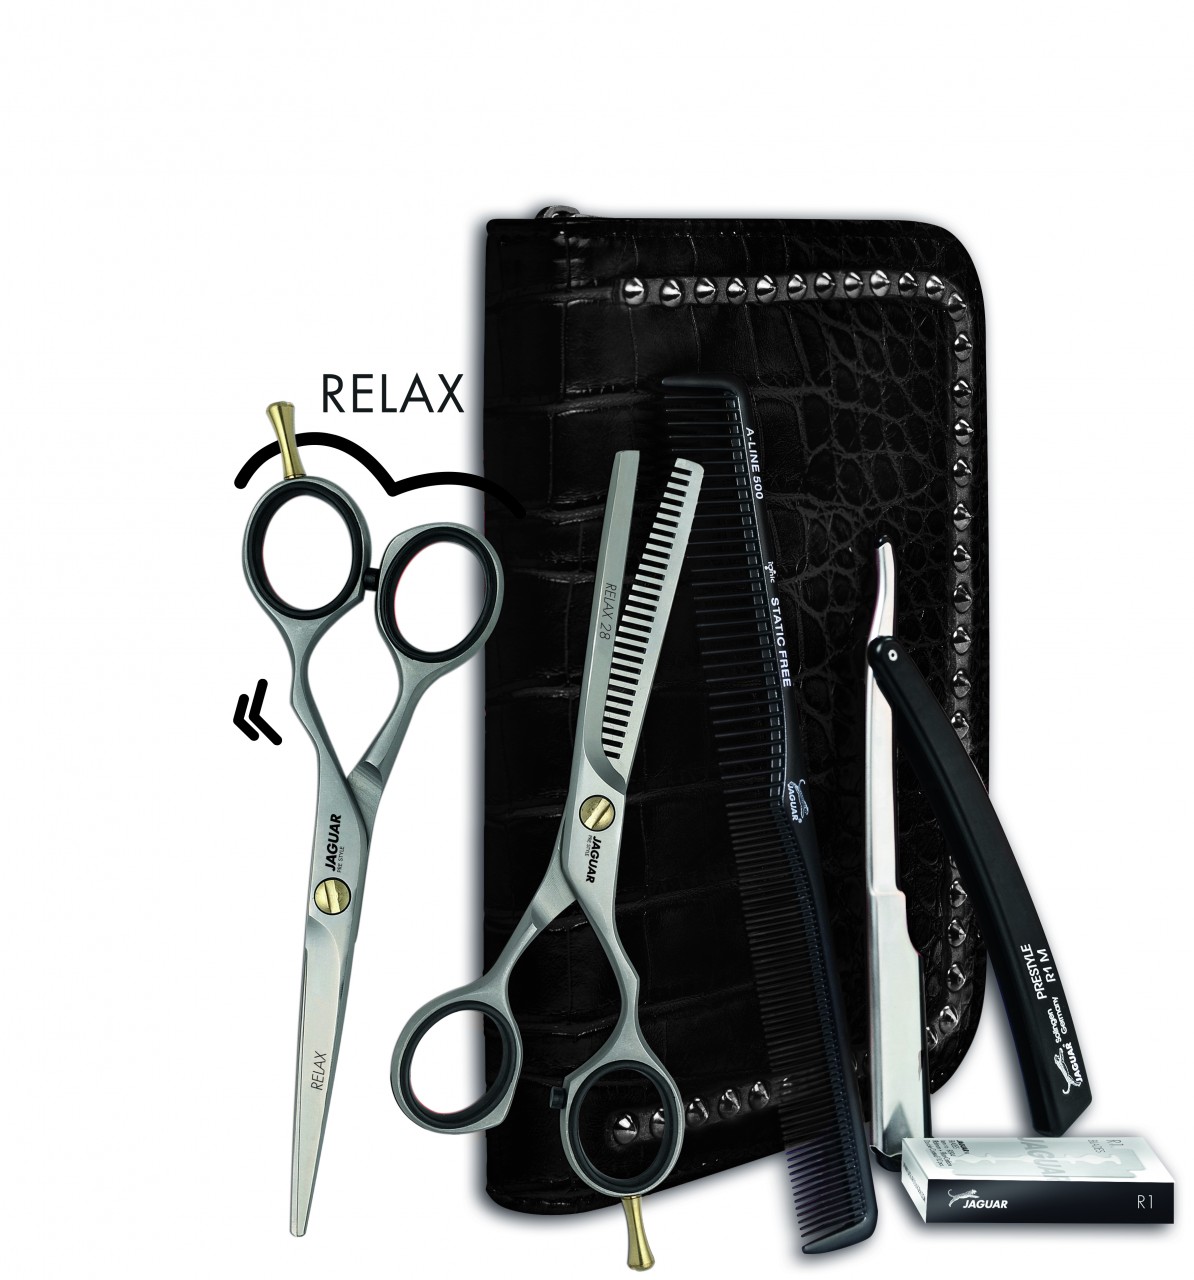 BASIC SET "TAKE IT" mit Haarschere, Modellierschere, Kamm, Rasiermesser, Klingen und Werkzeugtasche